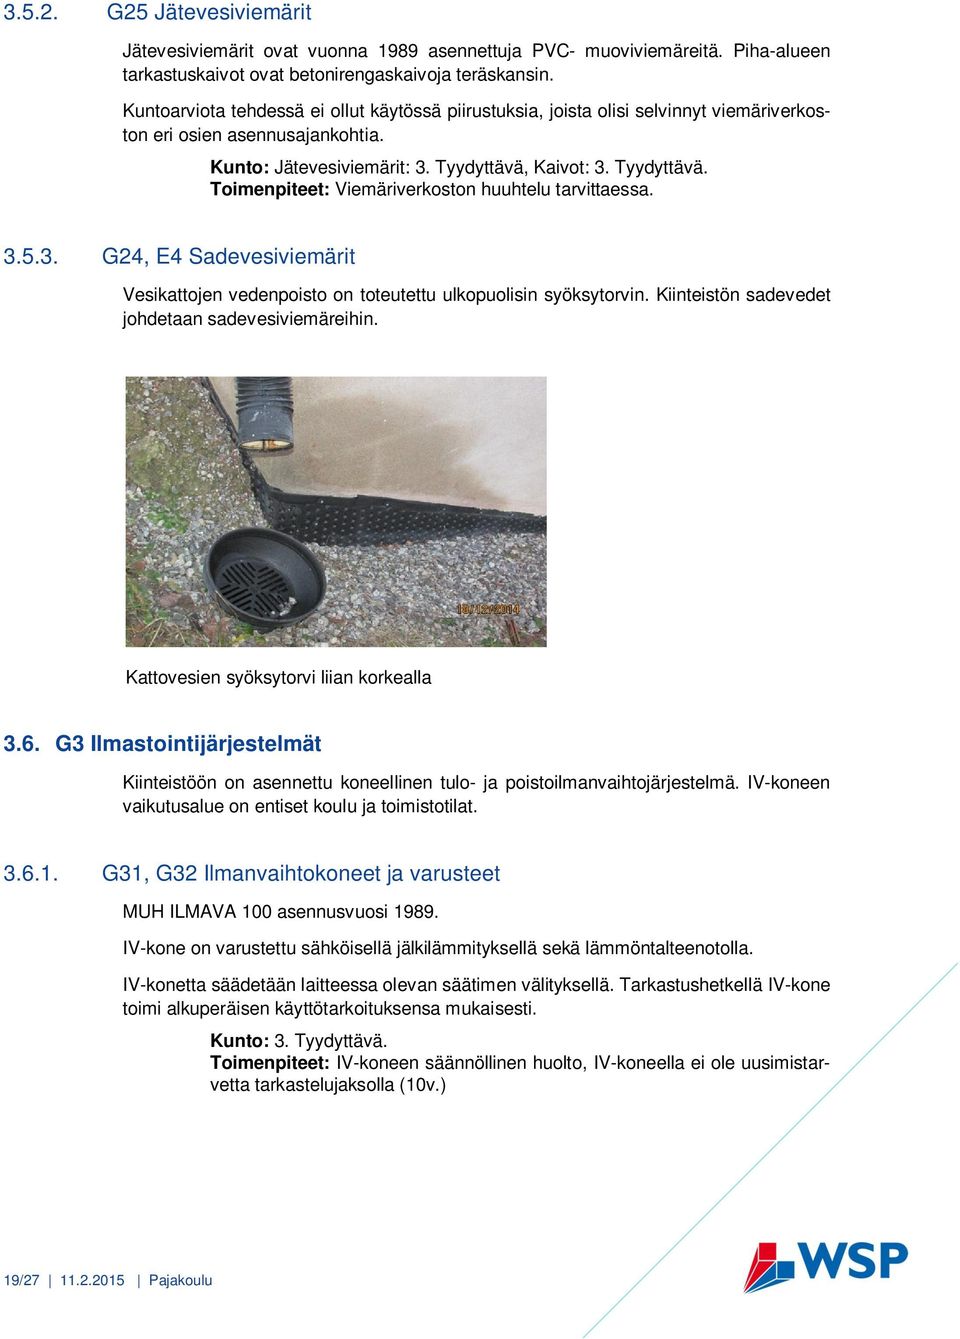 Kaivot: 3. Tyydyttävä. Toimenpiteet: Viemäriverkoston huuhtelu tarvittaessa. 3.5.3. G24, E4 Sadevesiviemärit Vesikattojen vedenpoisto on toteutettu ulkopuolisin syöksytorvin.